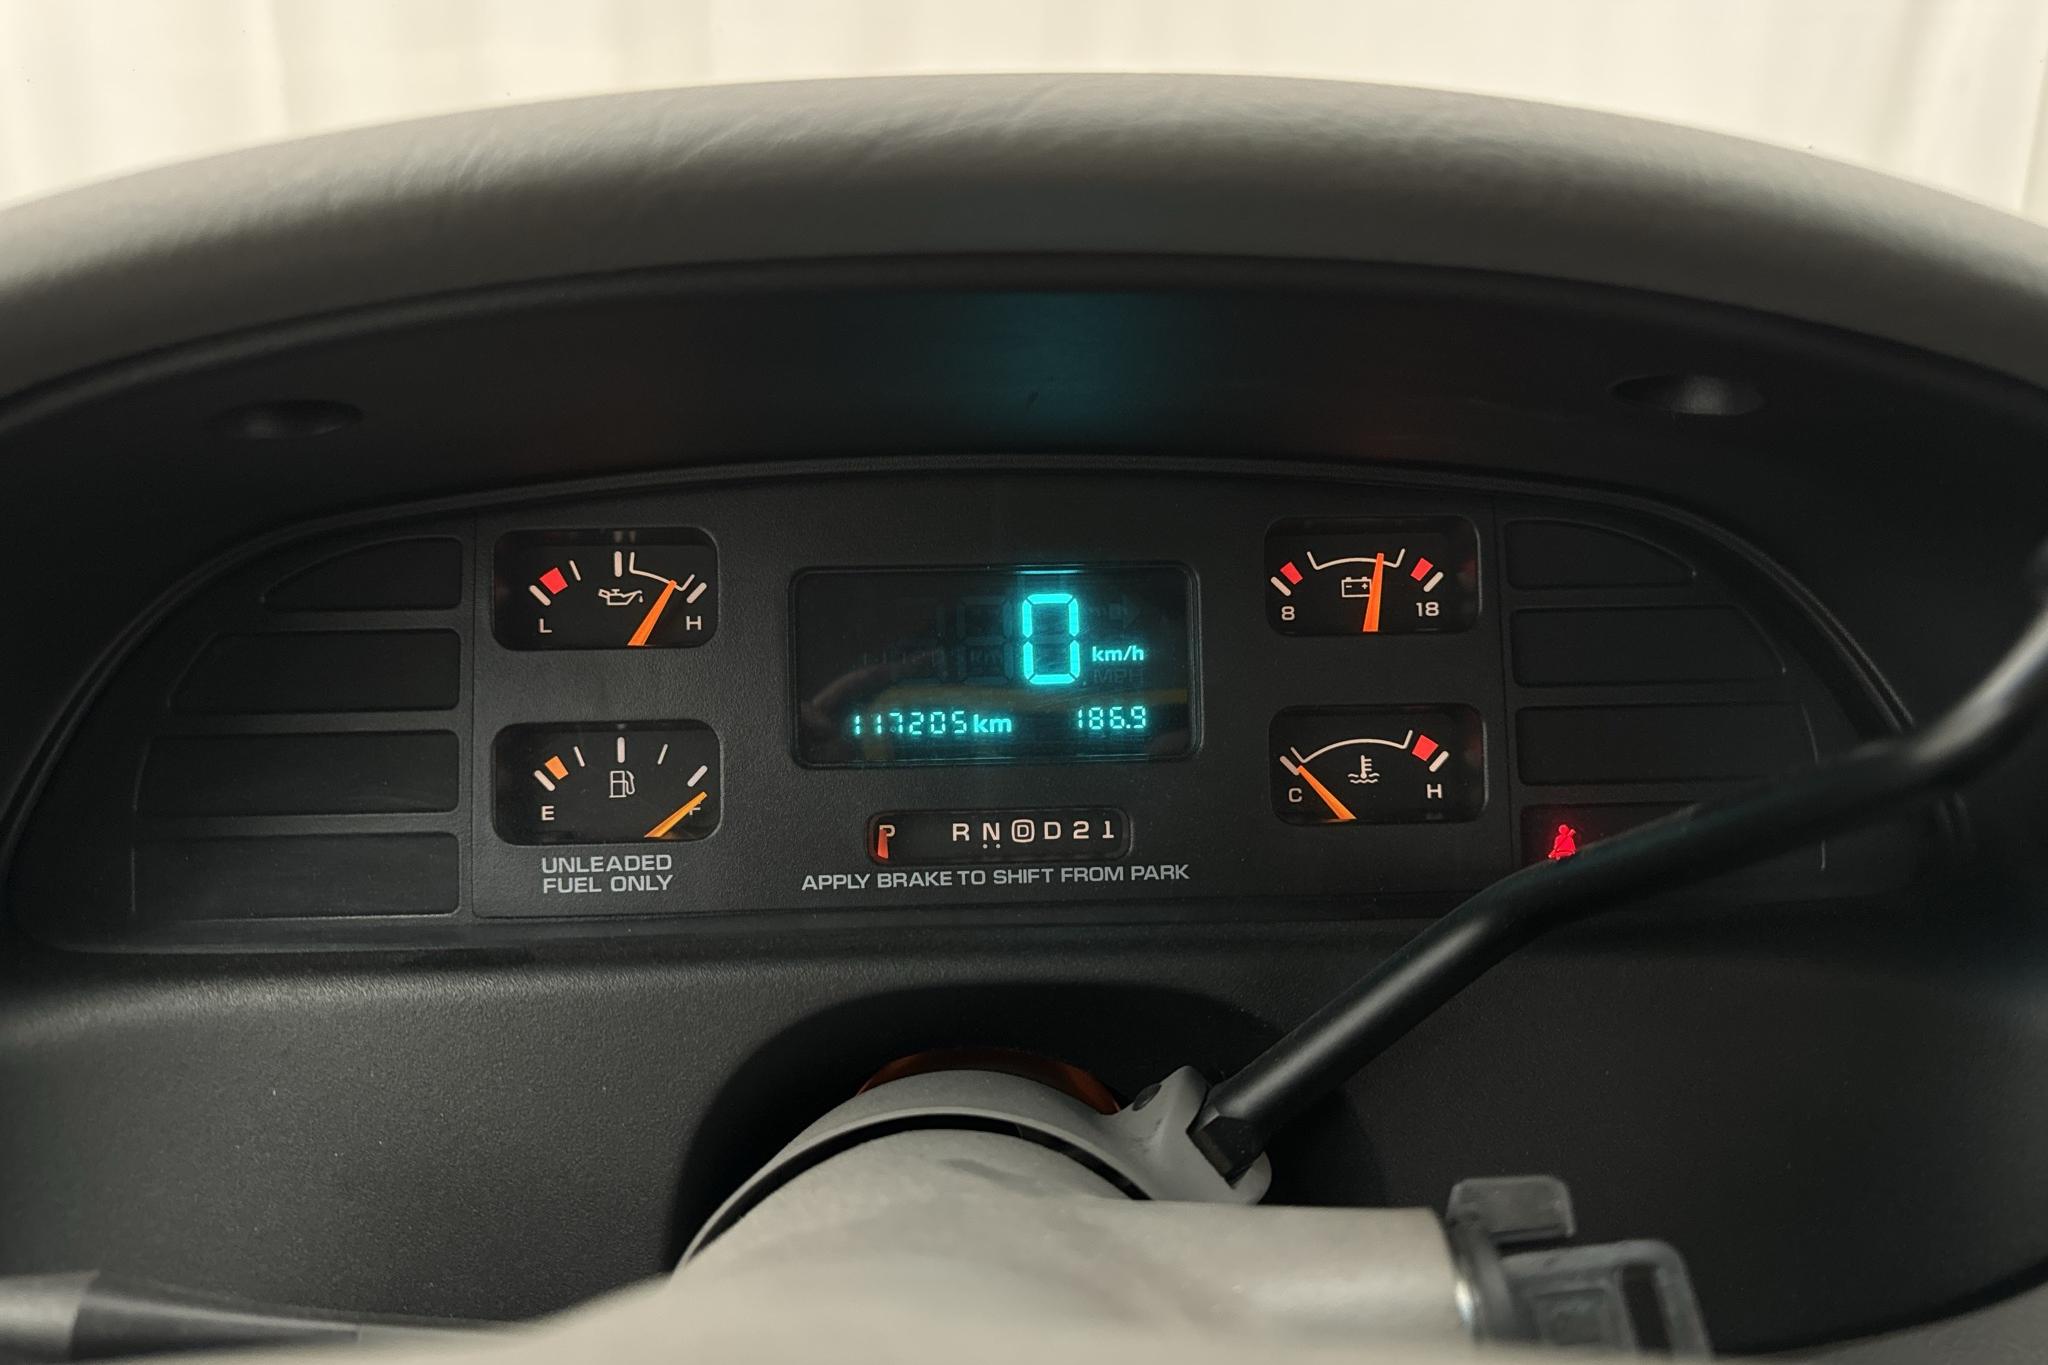 Chevrolet Impala SS 5.7 V8 (265hk) - 117 210 km - Automatic - Dark Red - 1995